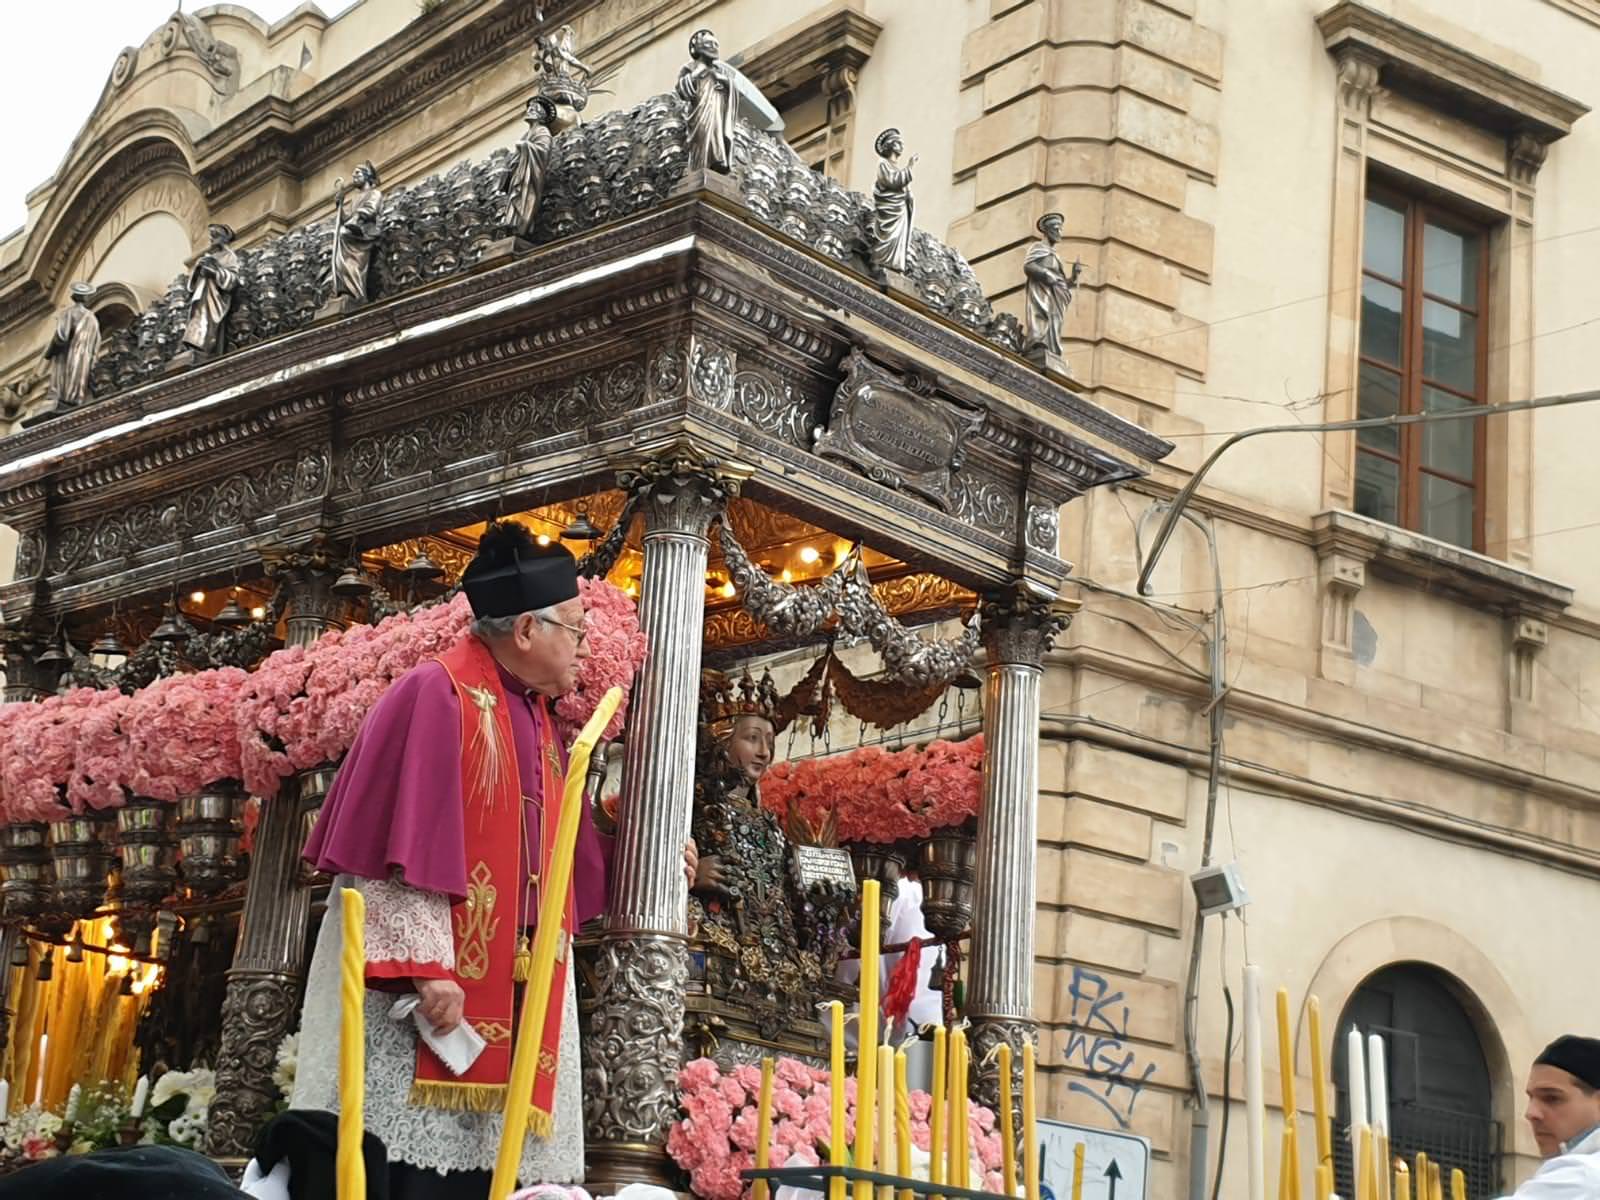 Festa di Sant’Agata 2021: chiarimenti su benedizione del “sacco” votivo, ceri e fiori – DETTAGLI